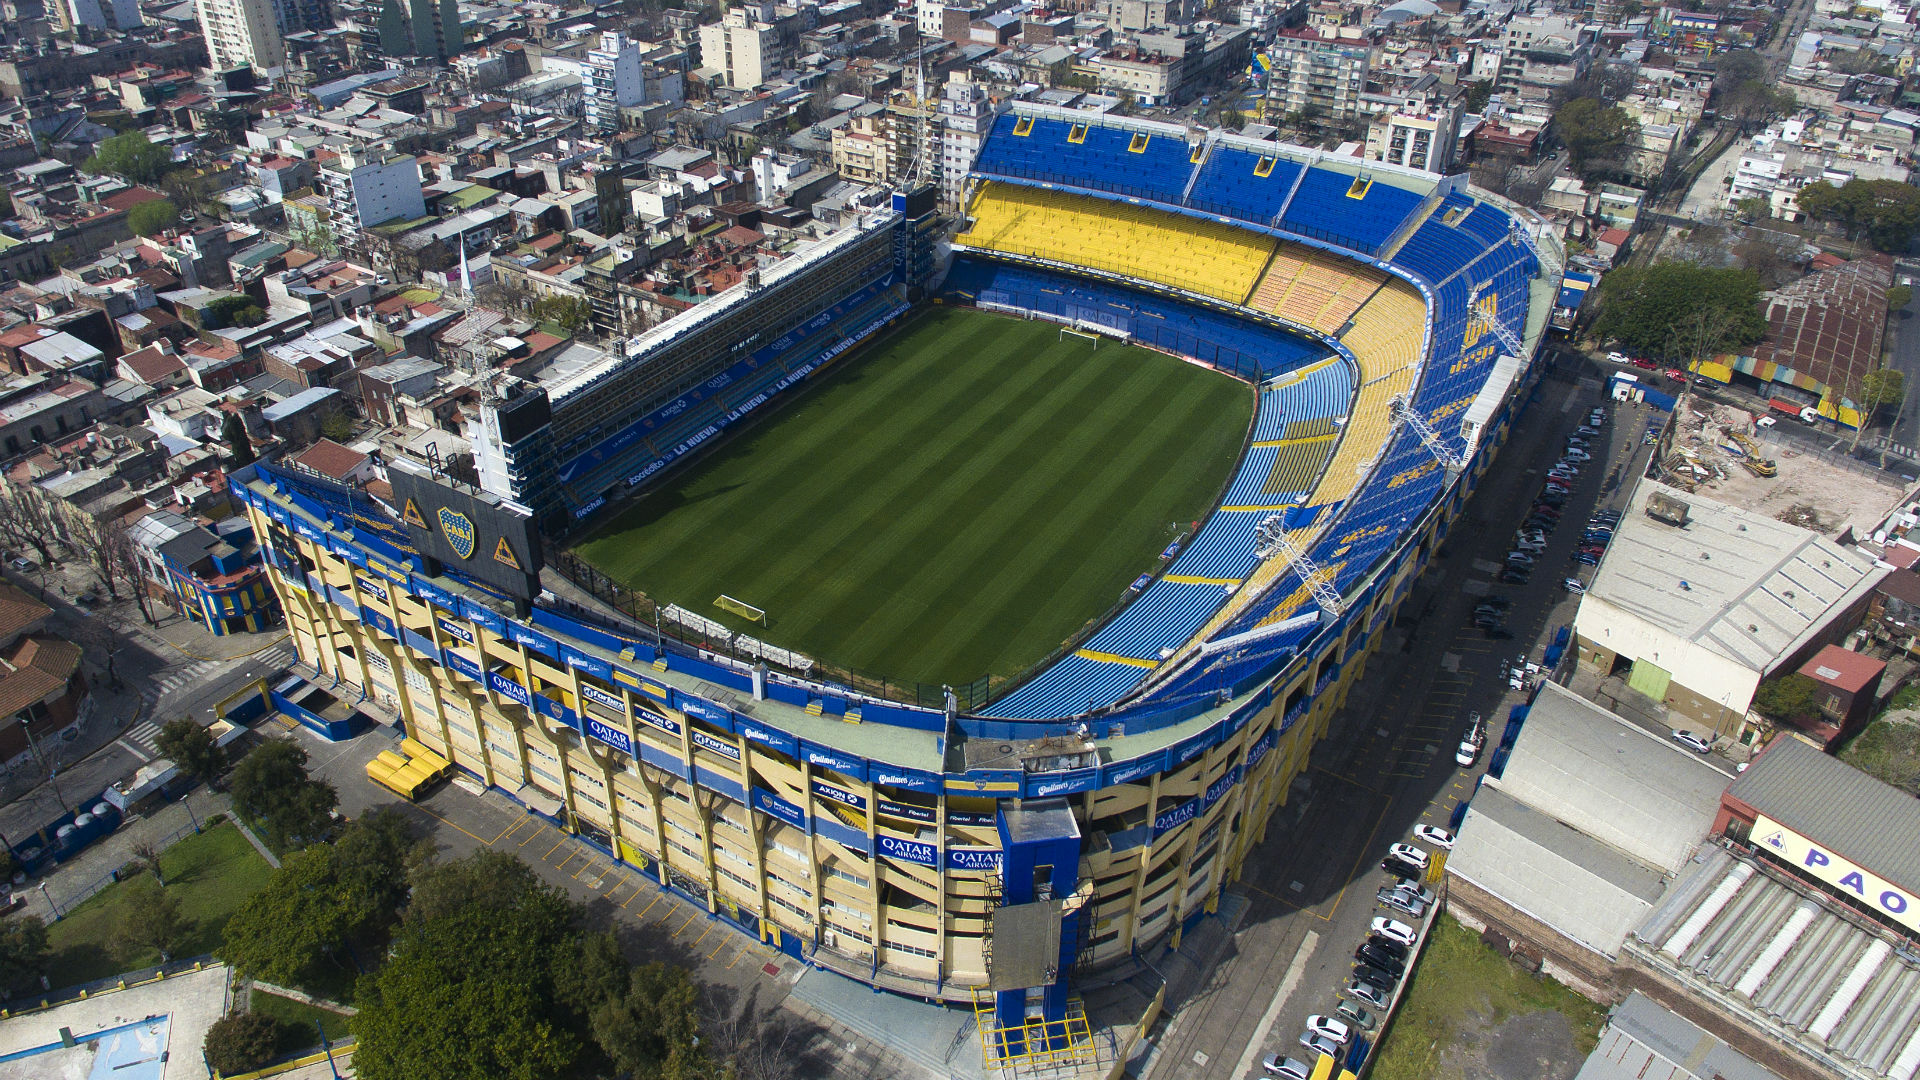 Boca Juniors vs Palmeiras: Live stream, TV channel, kick-off time